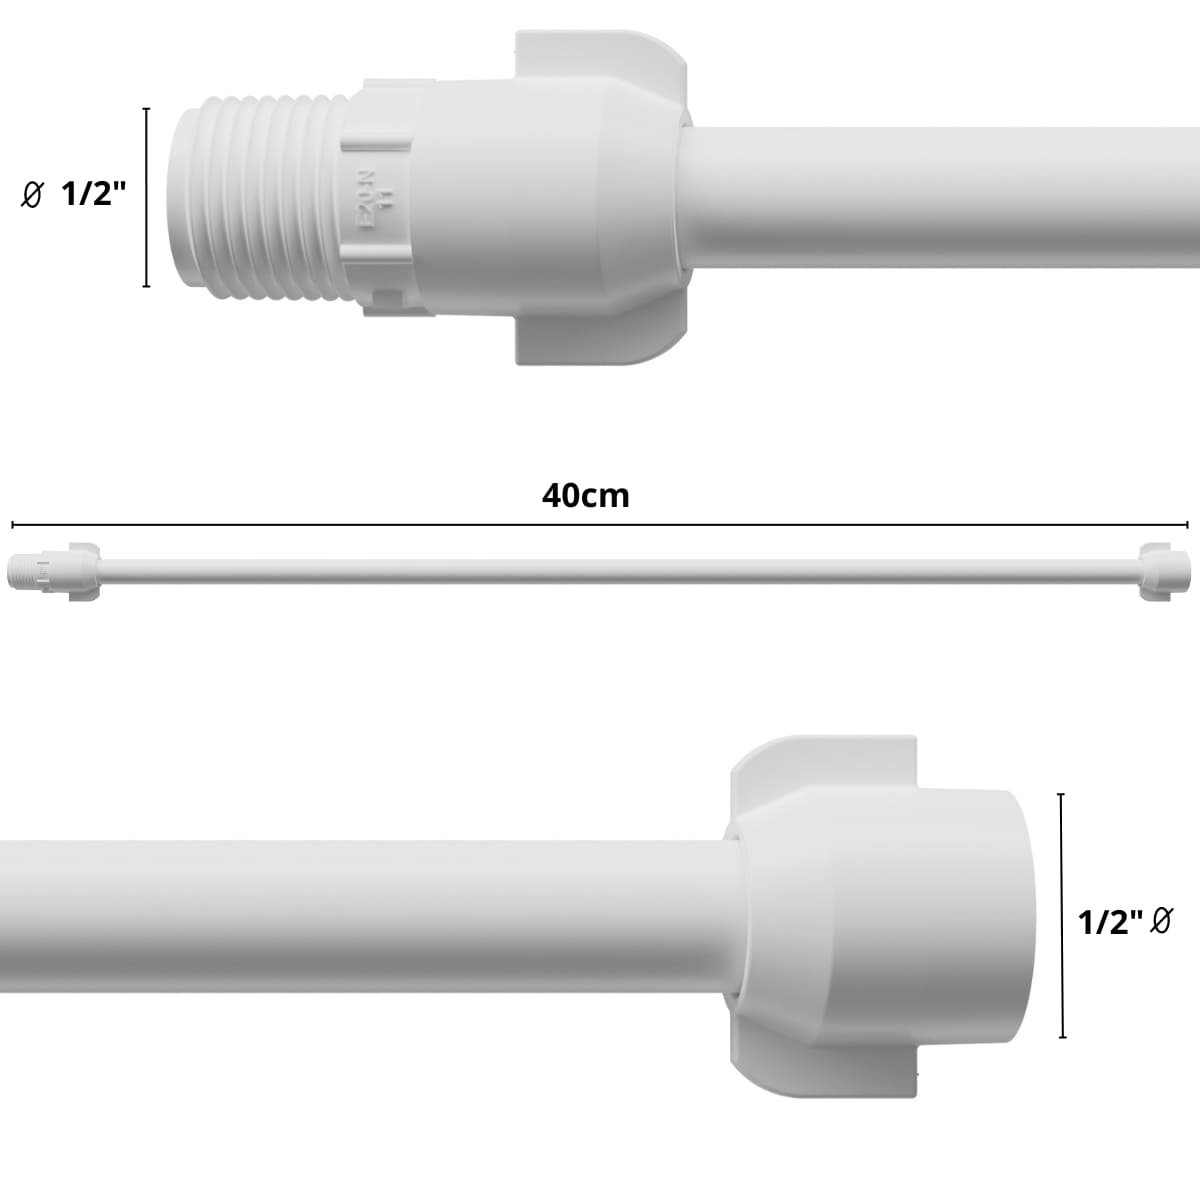 Engate Mangueira Flexível para Descarga 40cm X 1/2" Branco | Astra| Kit 03 Un - 3